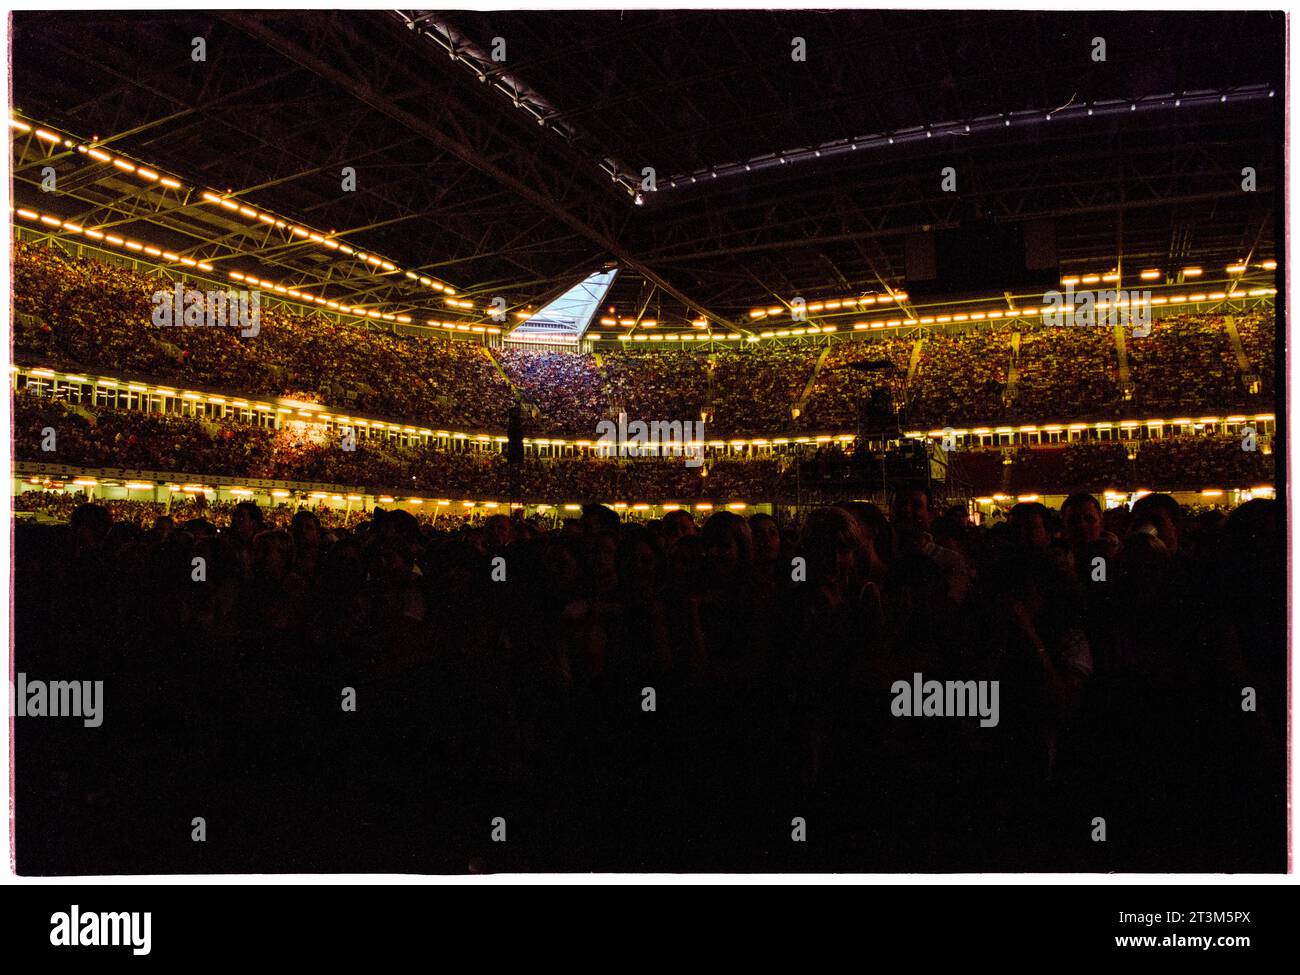 ROBBIE WILLIAMS, CARDIFF, 2001: Die Menge auf den Tribünen des Millennium Stadions mit geschlossenem Dach für den Robbie Williams-Auftritt auf seiner Hochzeiten, Barmitzvahs & Stadiums Tour in Cardiff, Wales, Großbritannien am 14. Juli 2001. Foto: Rob Watkins Stockfoto